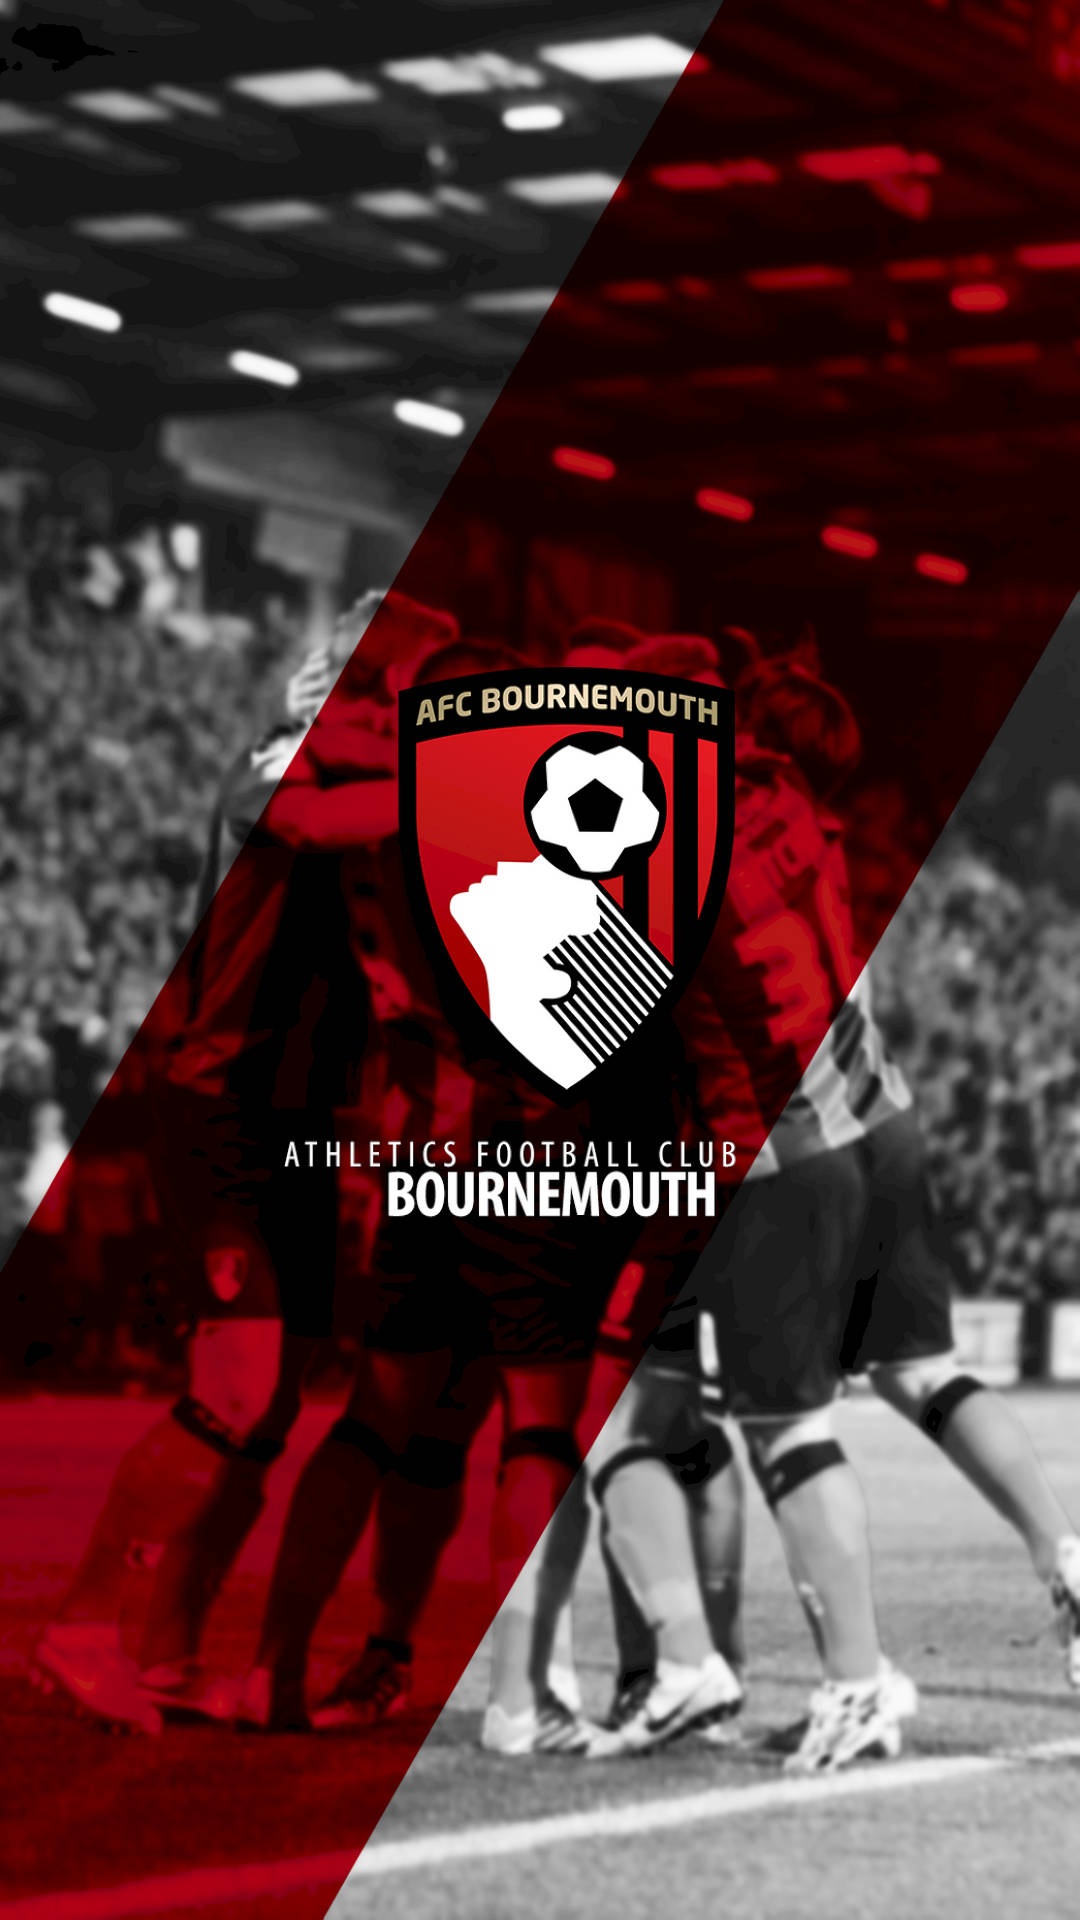 Logotipodel Afc Bournemouth En Rojo Y Negro Fondo de pantalla